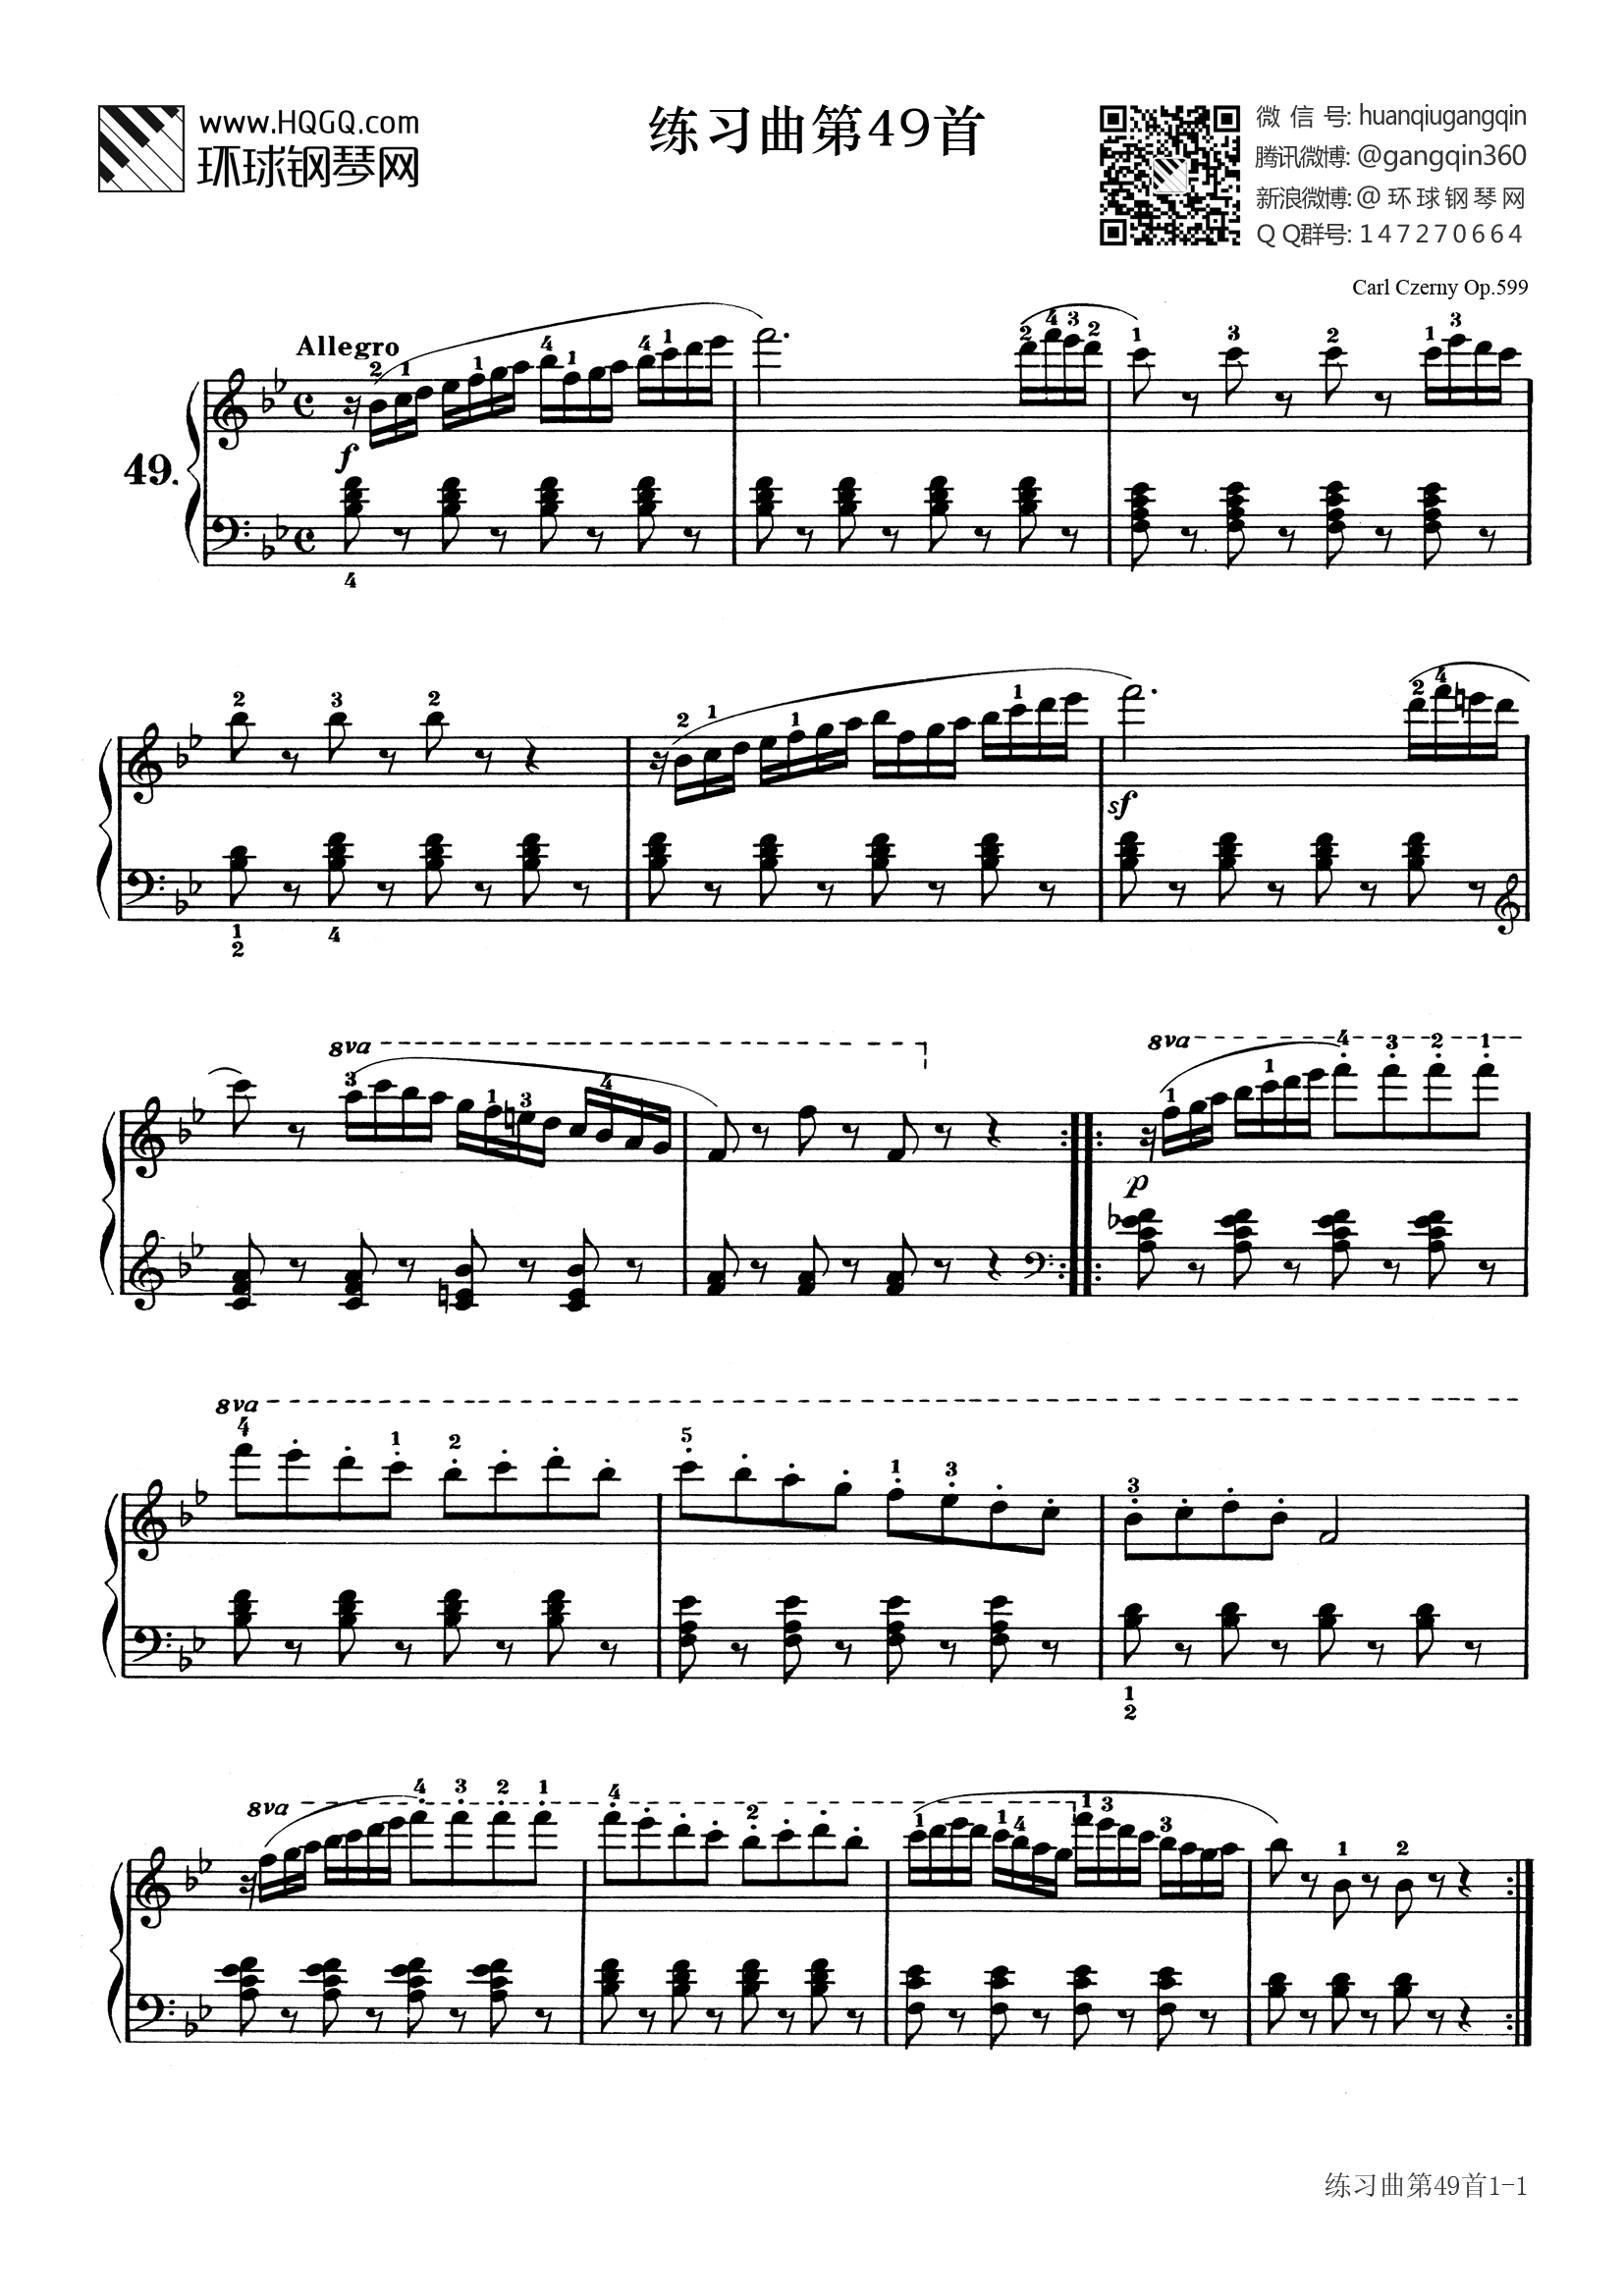 车尔尼599第22条钢琴谱图片